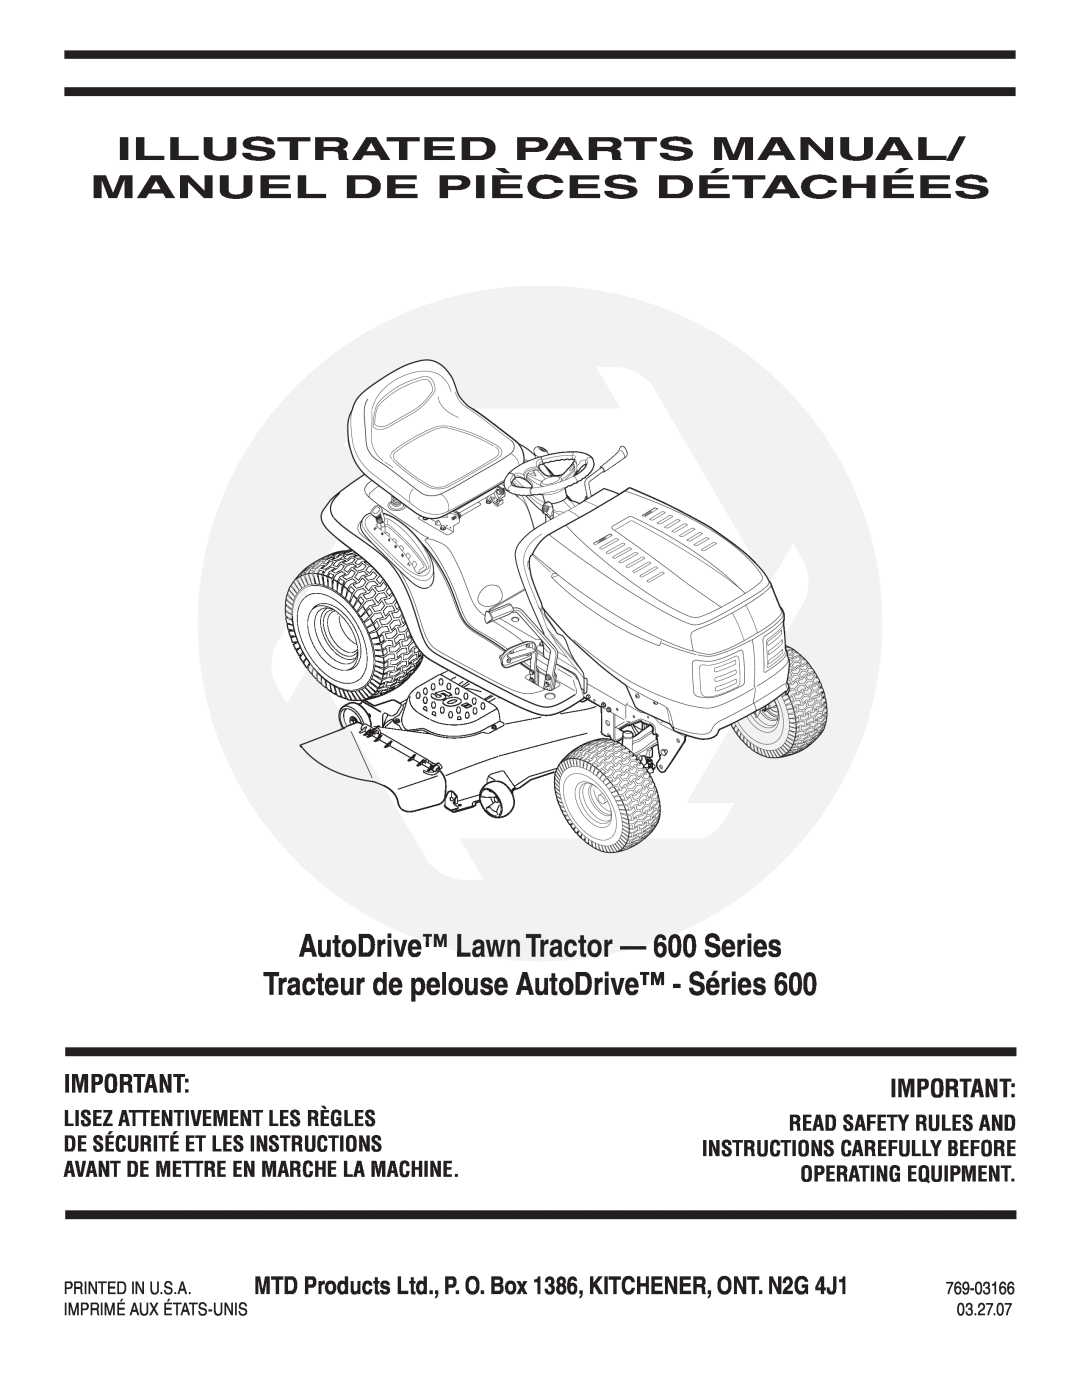 MTD manual Illustrated Parts Manual/ Manuel De Pièces Détachées, Hydrostatic Lawn Tractor - 600 Series, 769-03162 